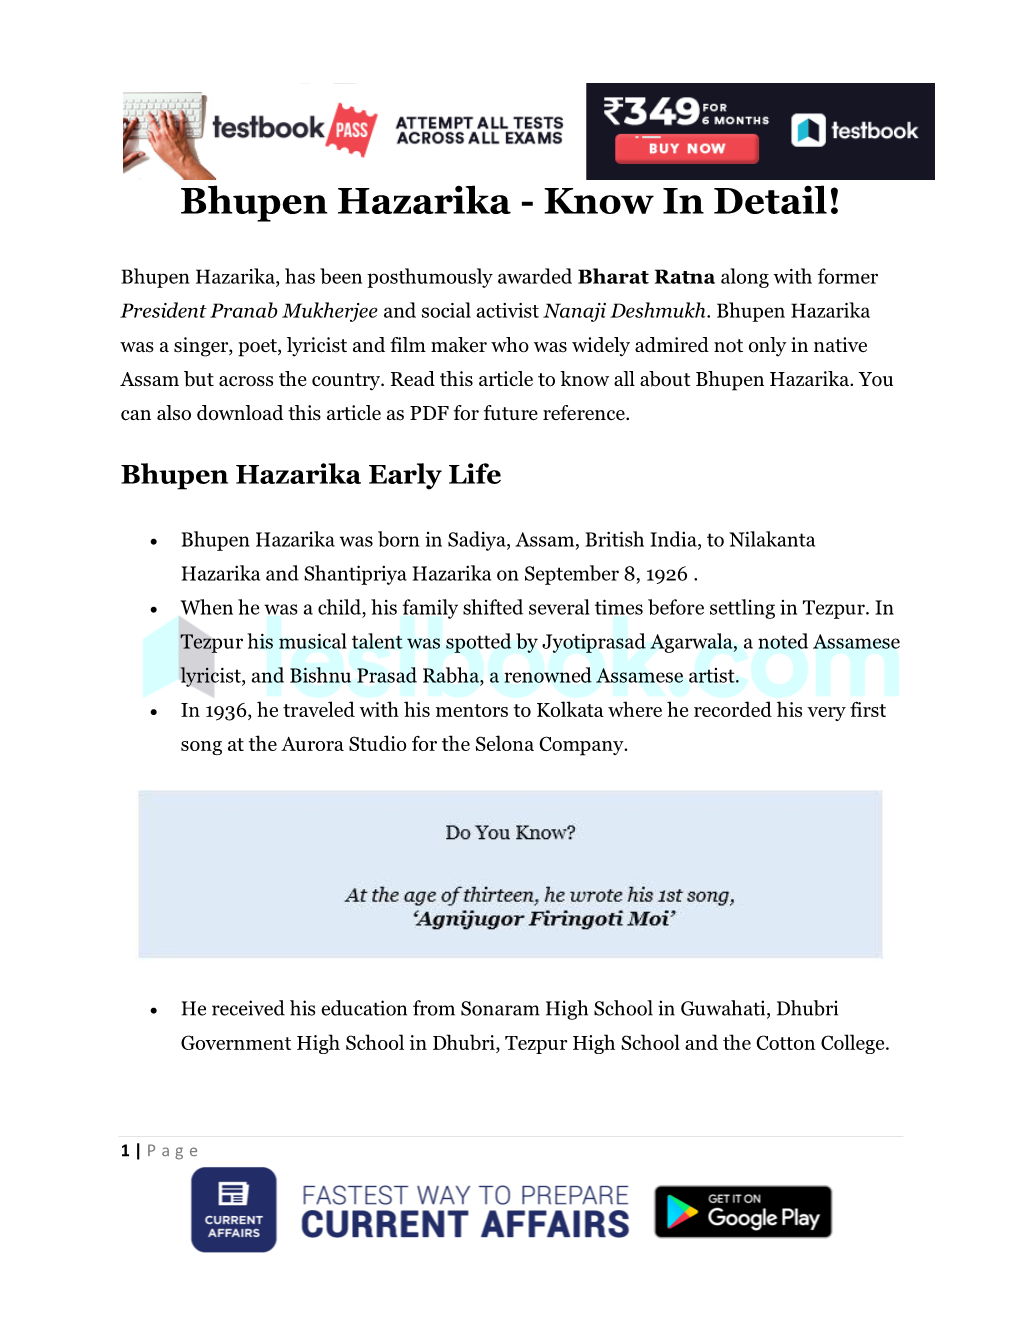 Bhupen Hazarika - Know in Detail!